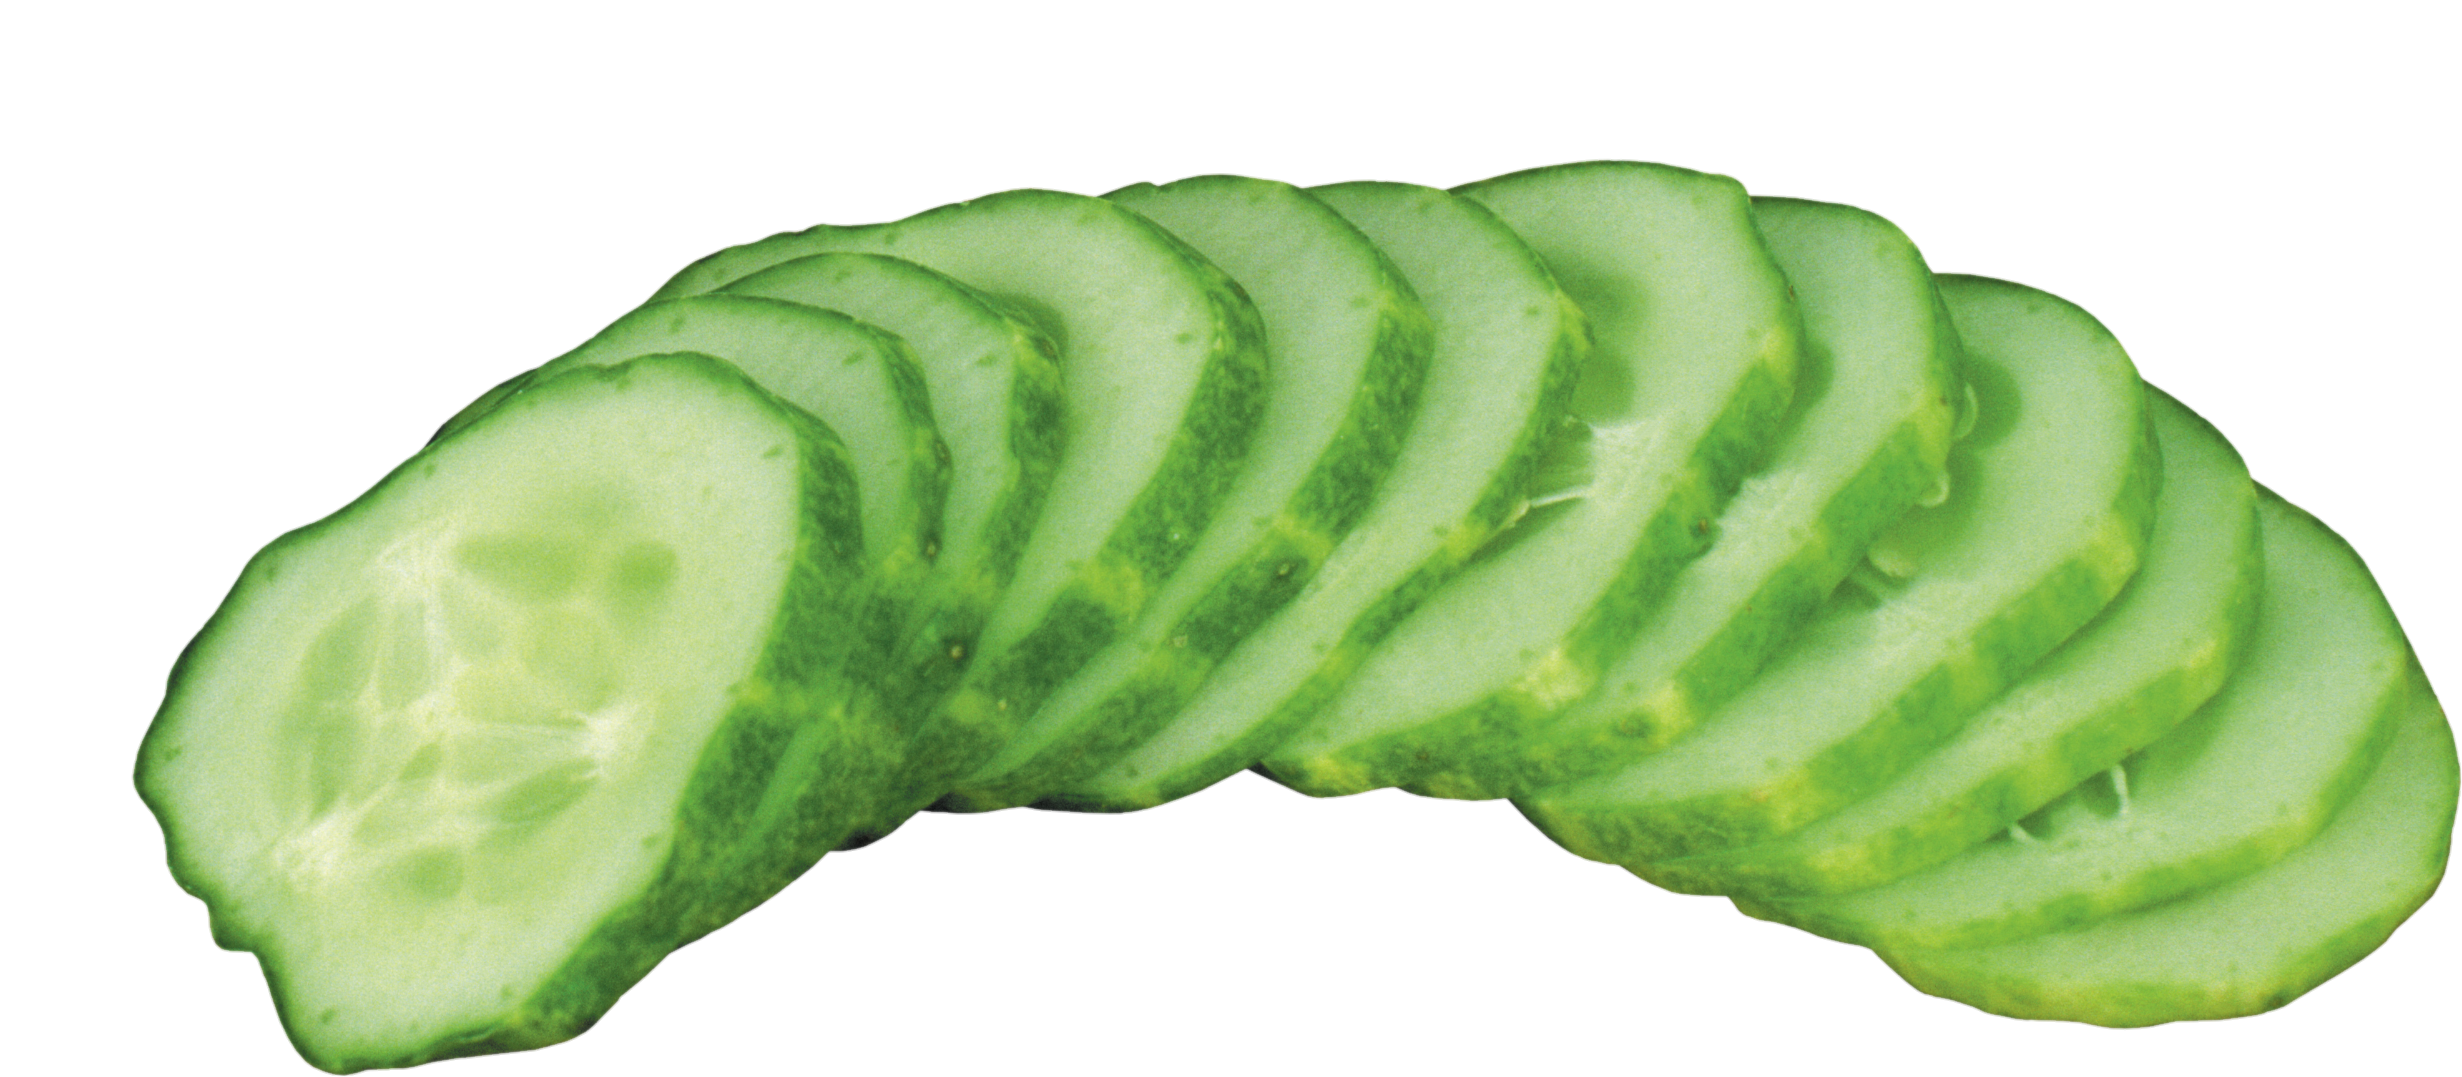 Cucumber-24